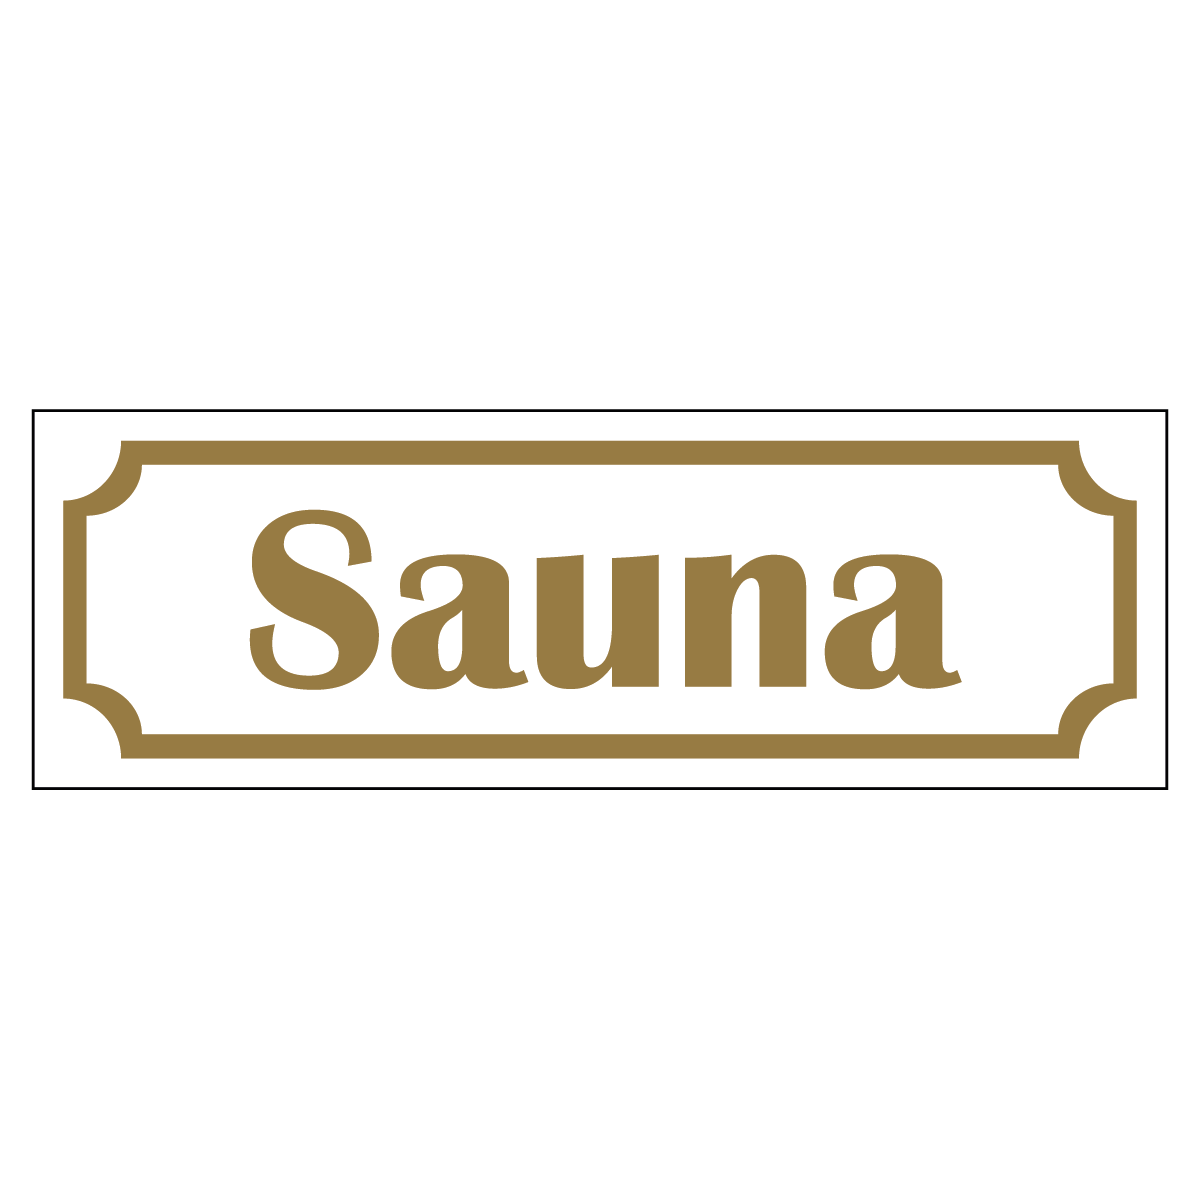 Sauna - Skylt - 150x50mm - Vit - Guld